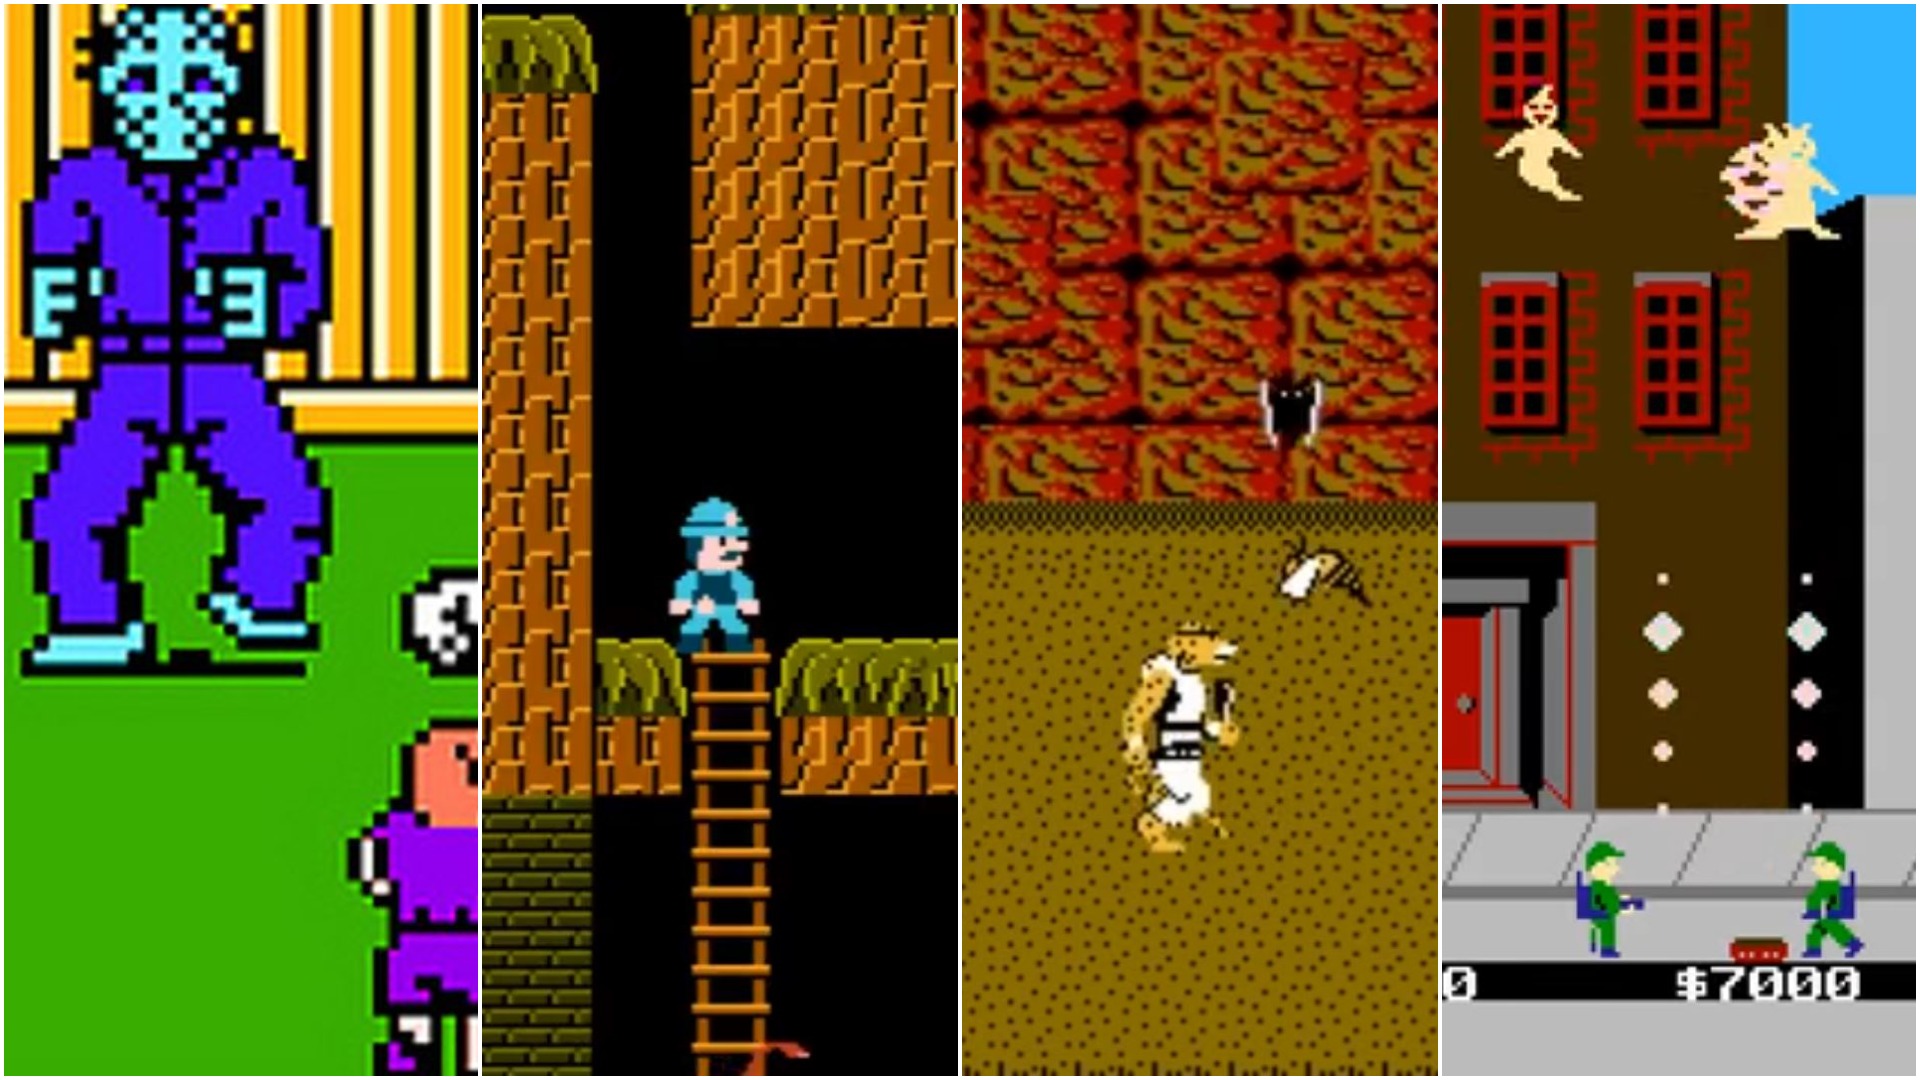 15 NES Games | Den of Geek